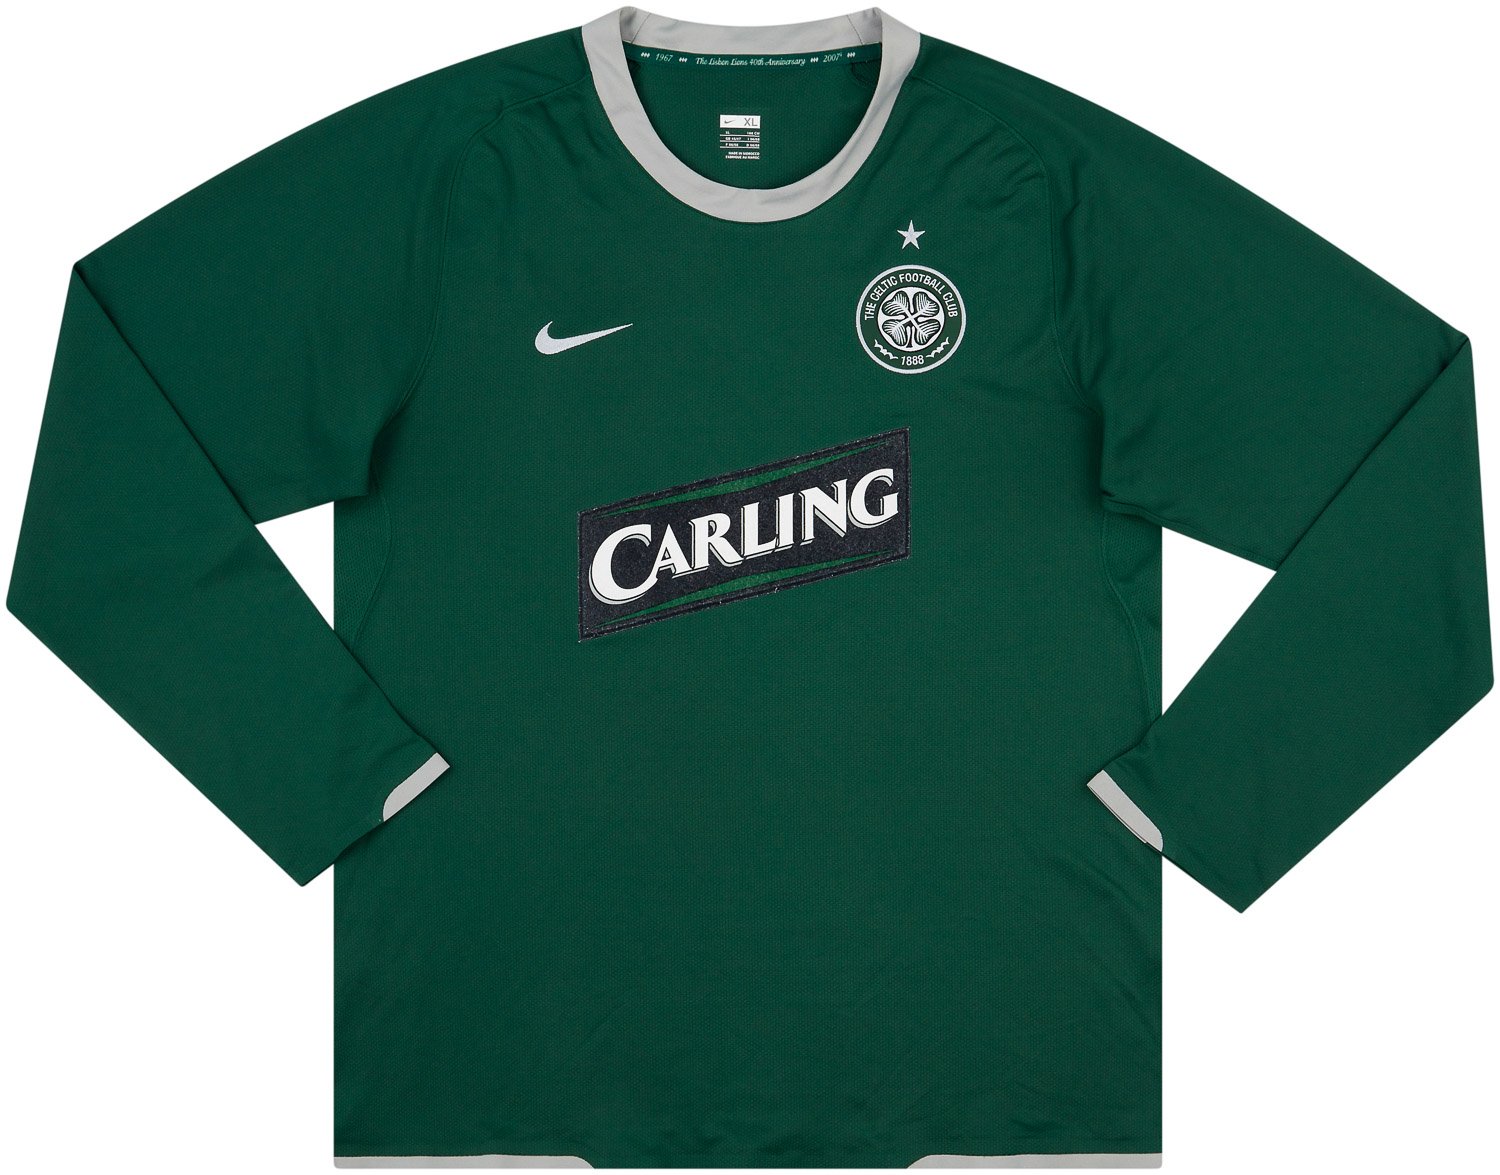 Celtic 2007-08 Third Kit